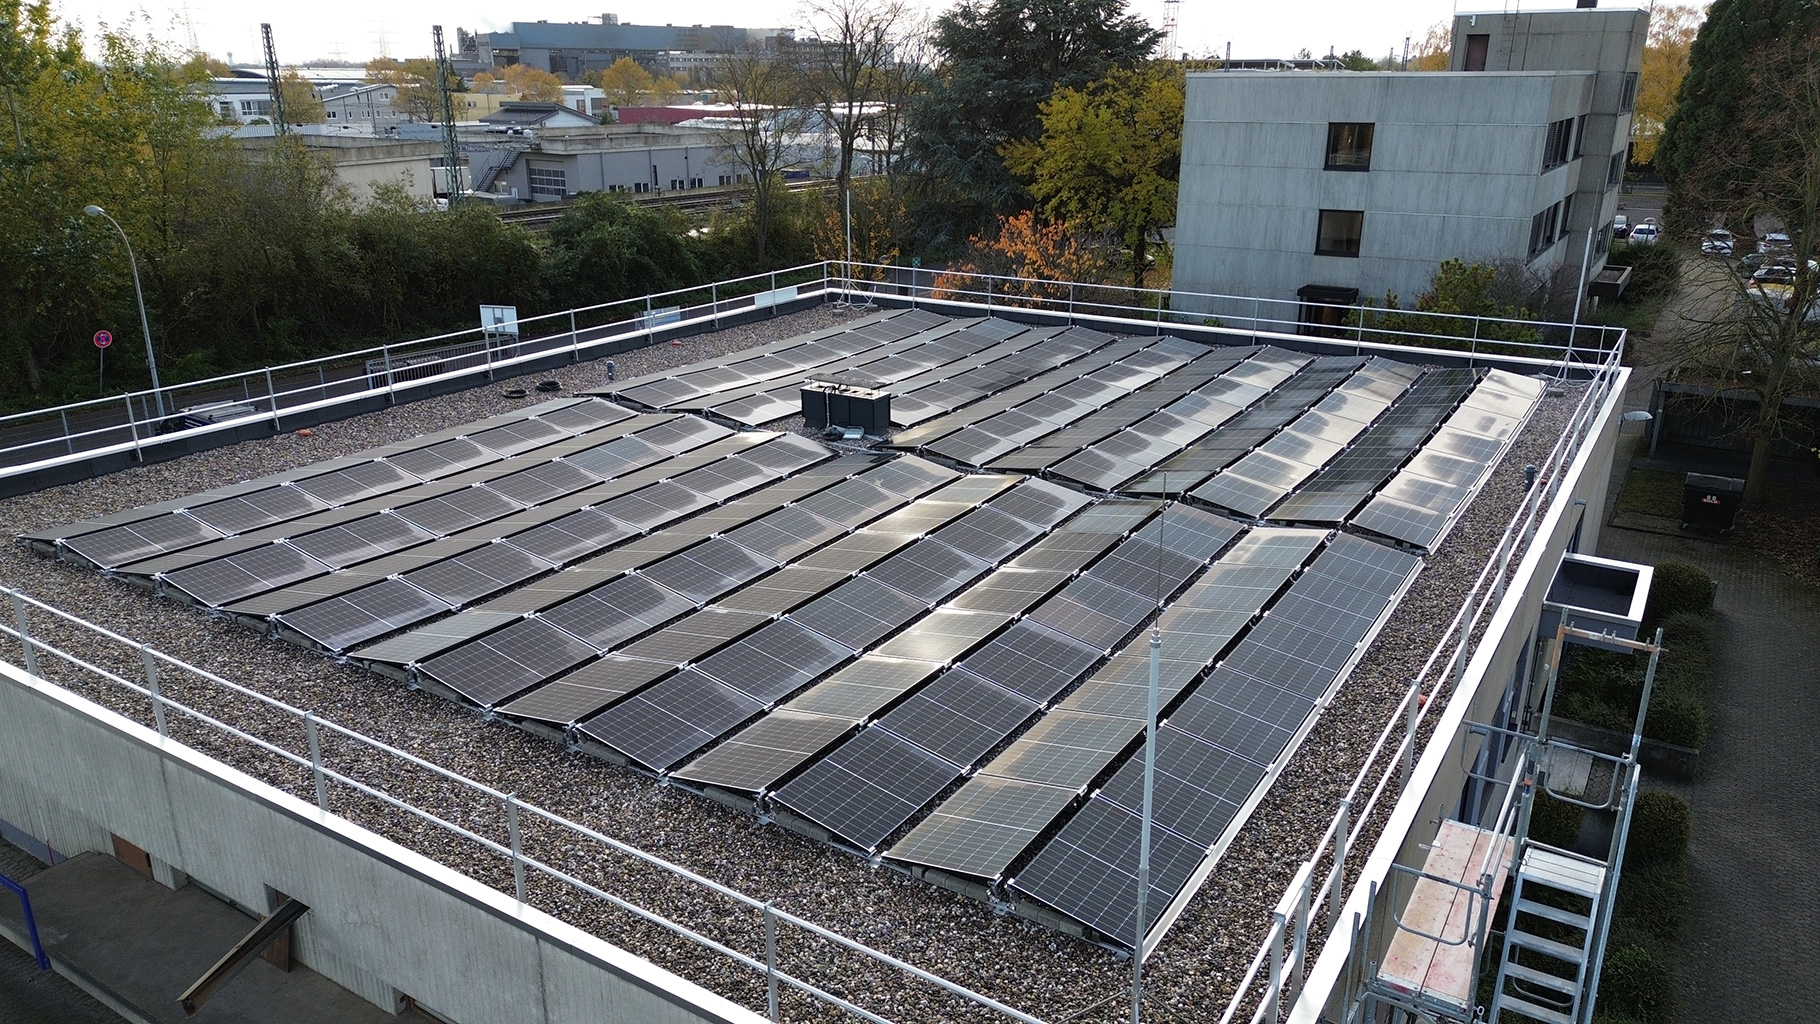 Photovoltaik-Anlage auf dem Dach von Rheingas am Standort Brühl.